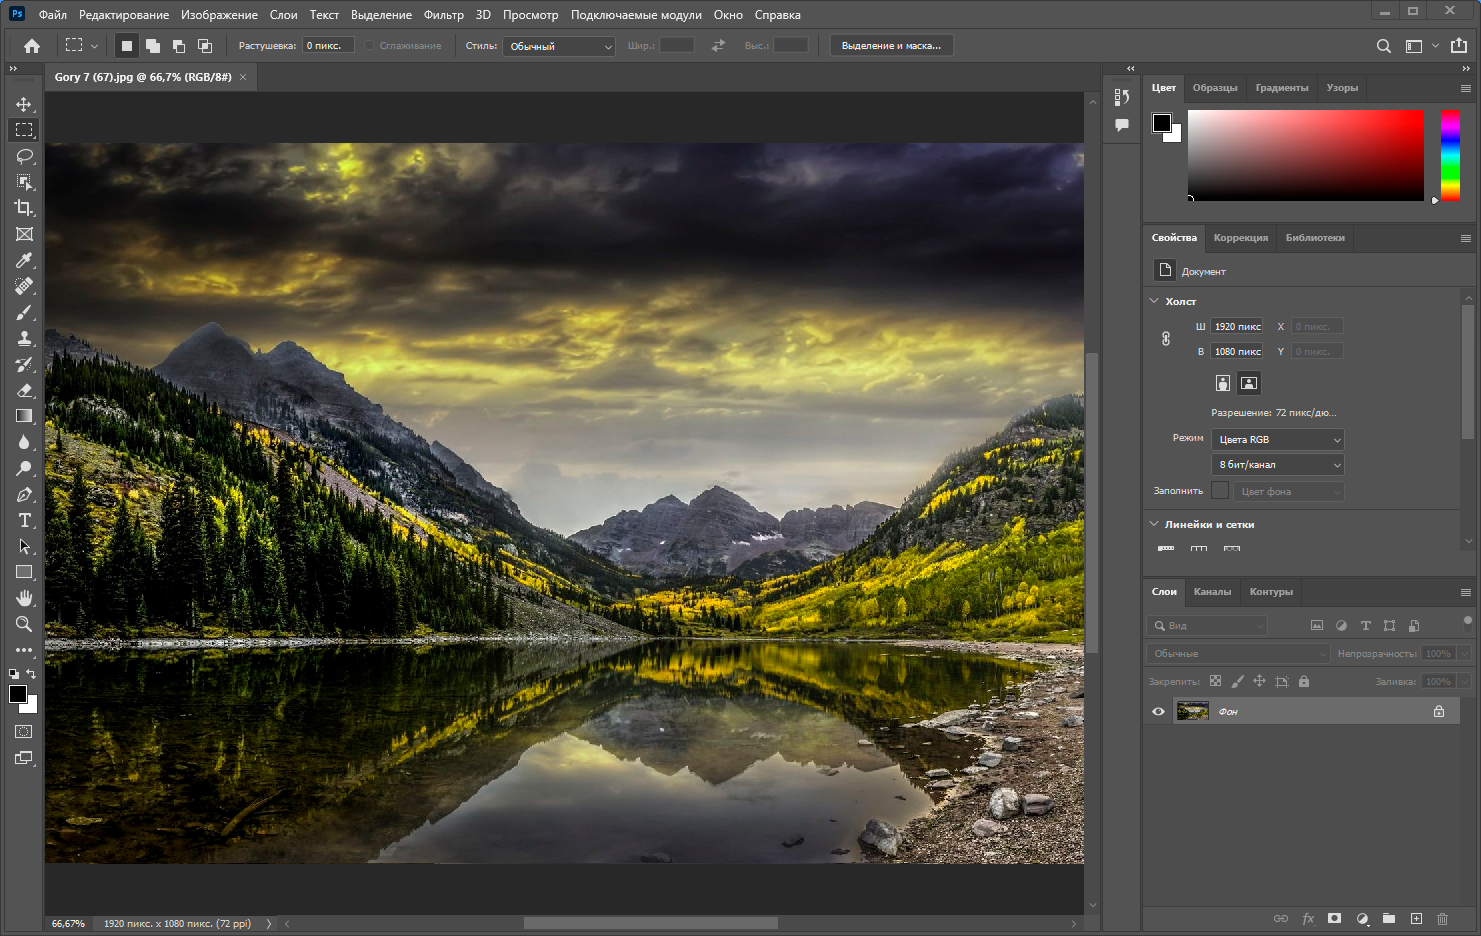 Adobe Photoshop 2022 23.1.0.143 RePack by KpoJIuK [Multi/Ru]